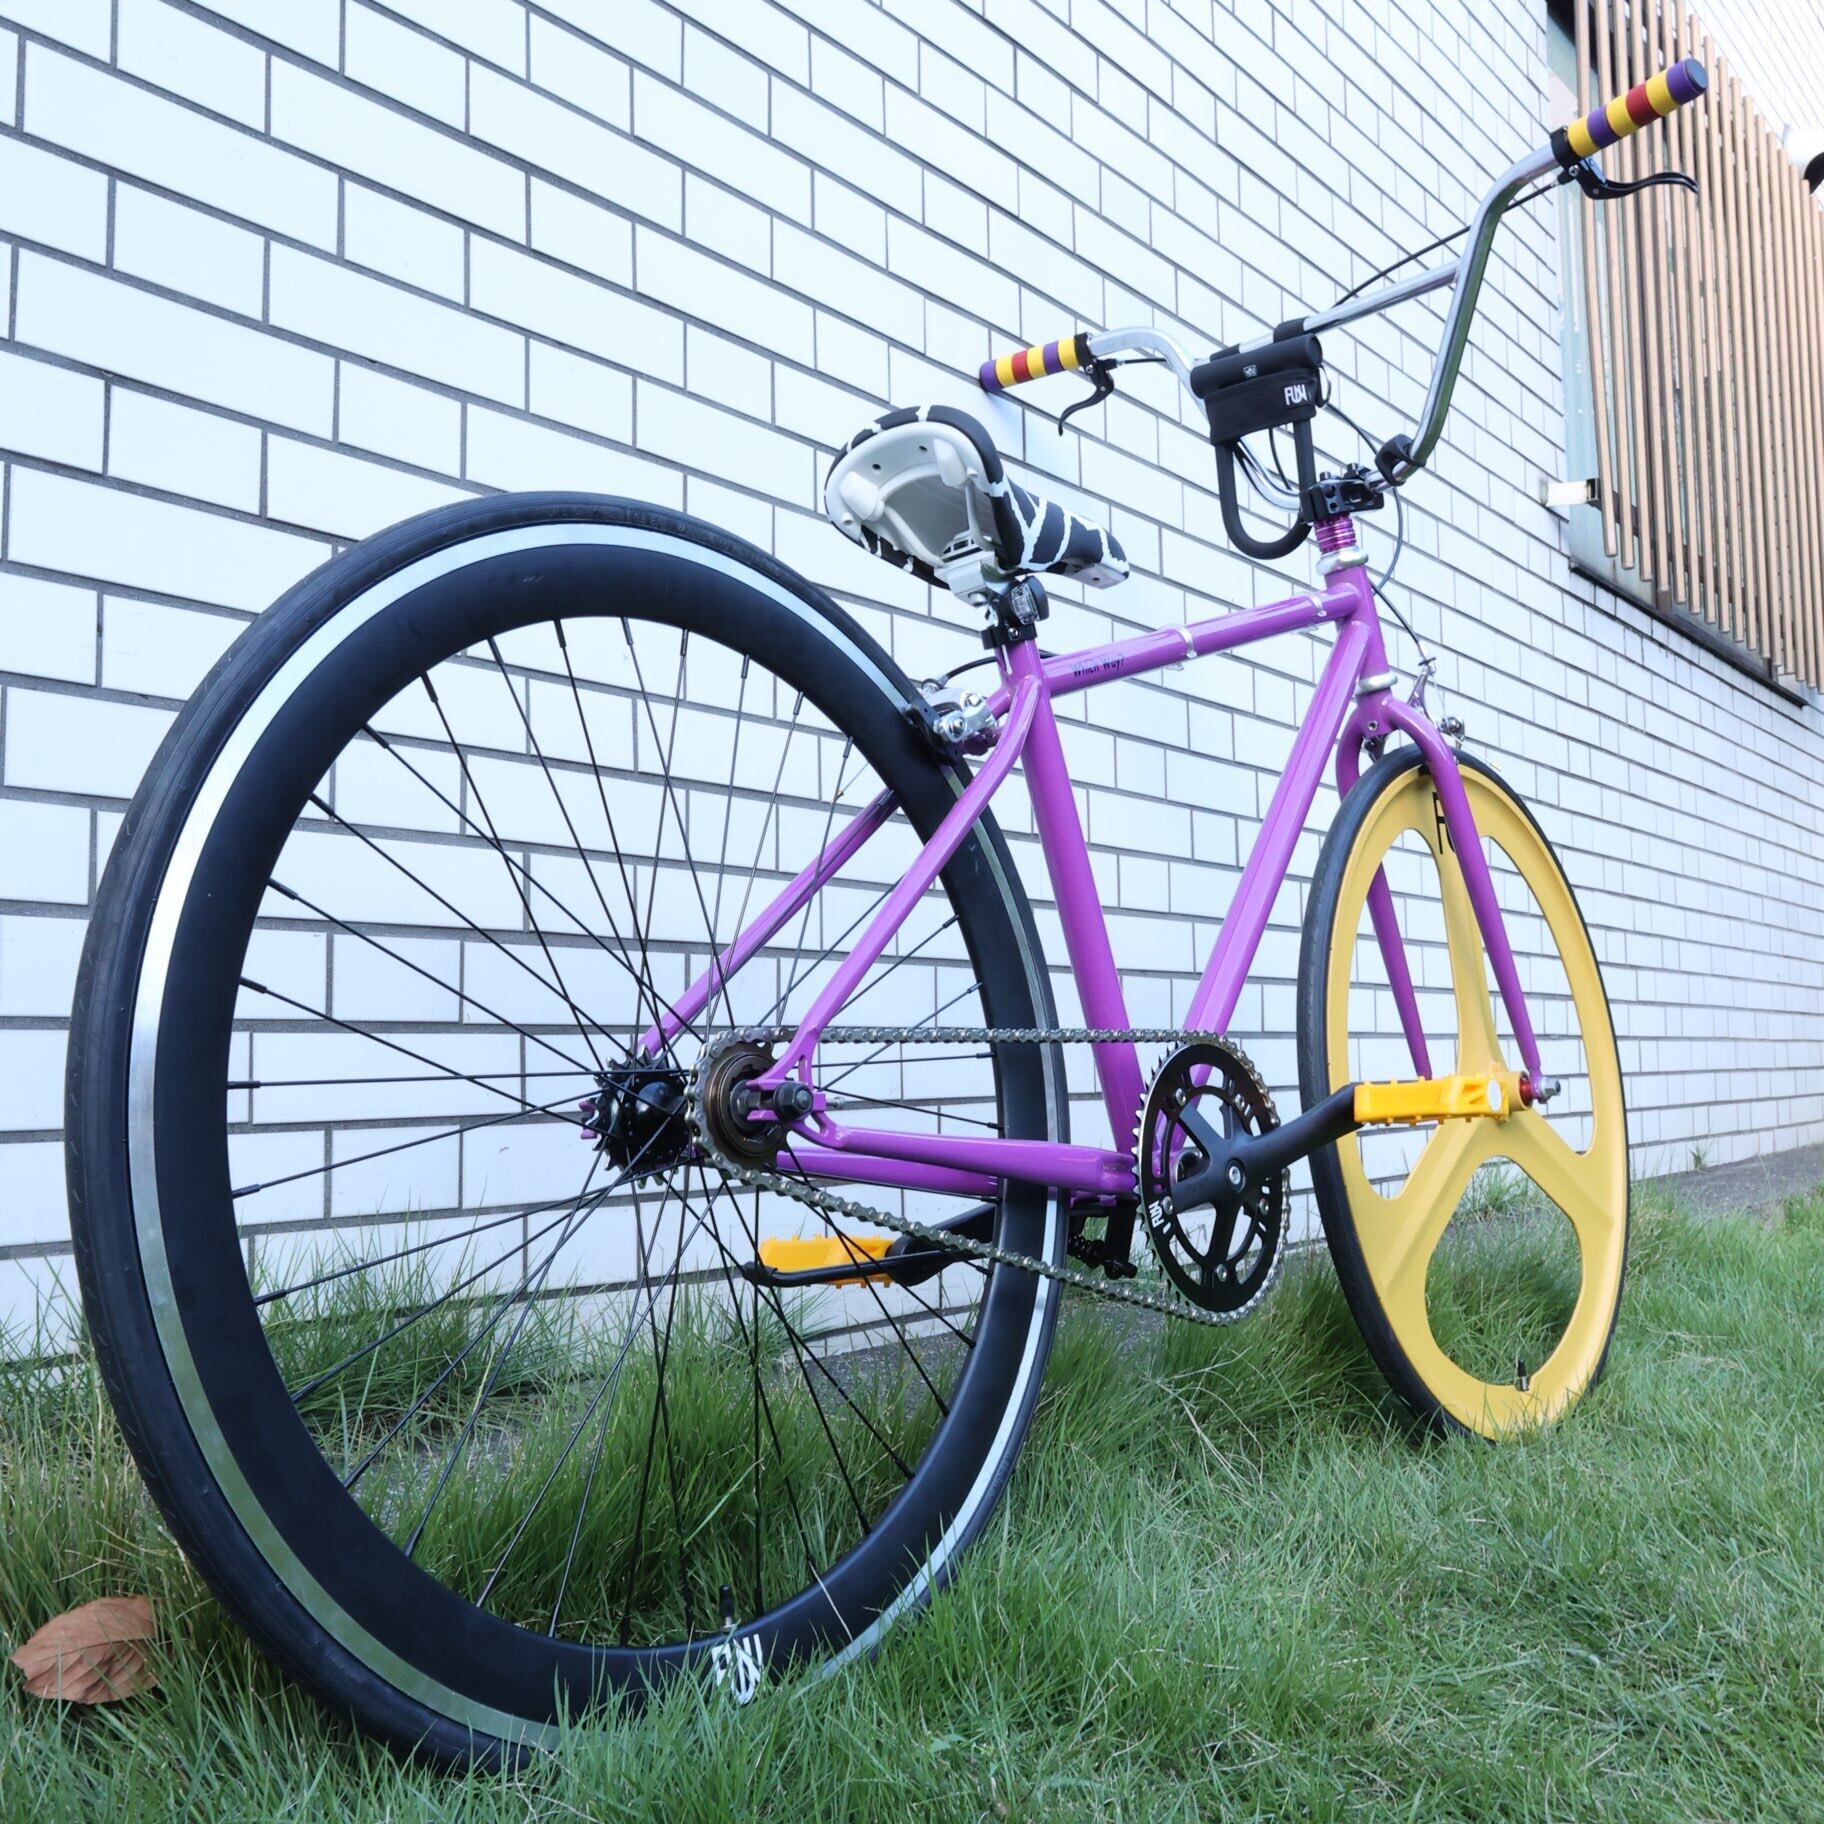 【新品】FUN 700C サイズ40 江戸紫 ピストフレーム 自転車パーツ